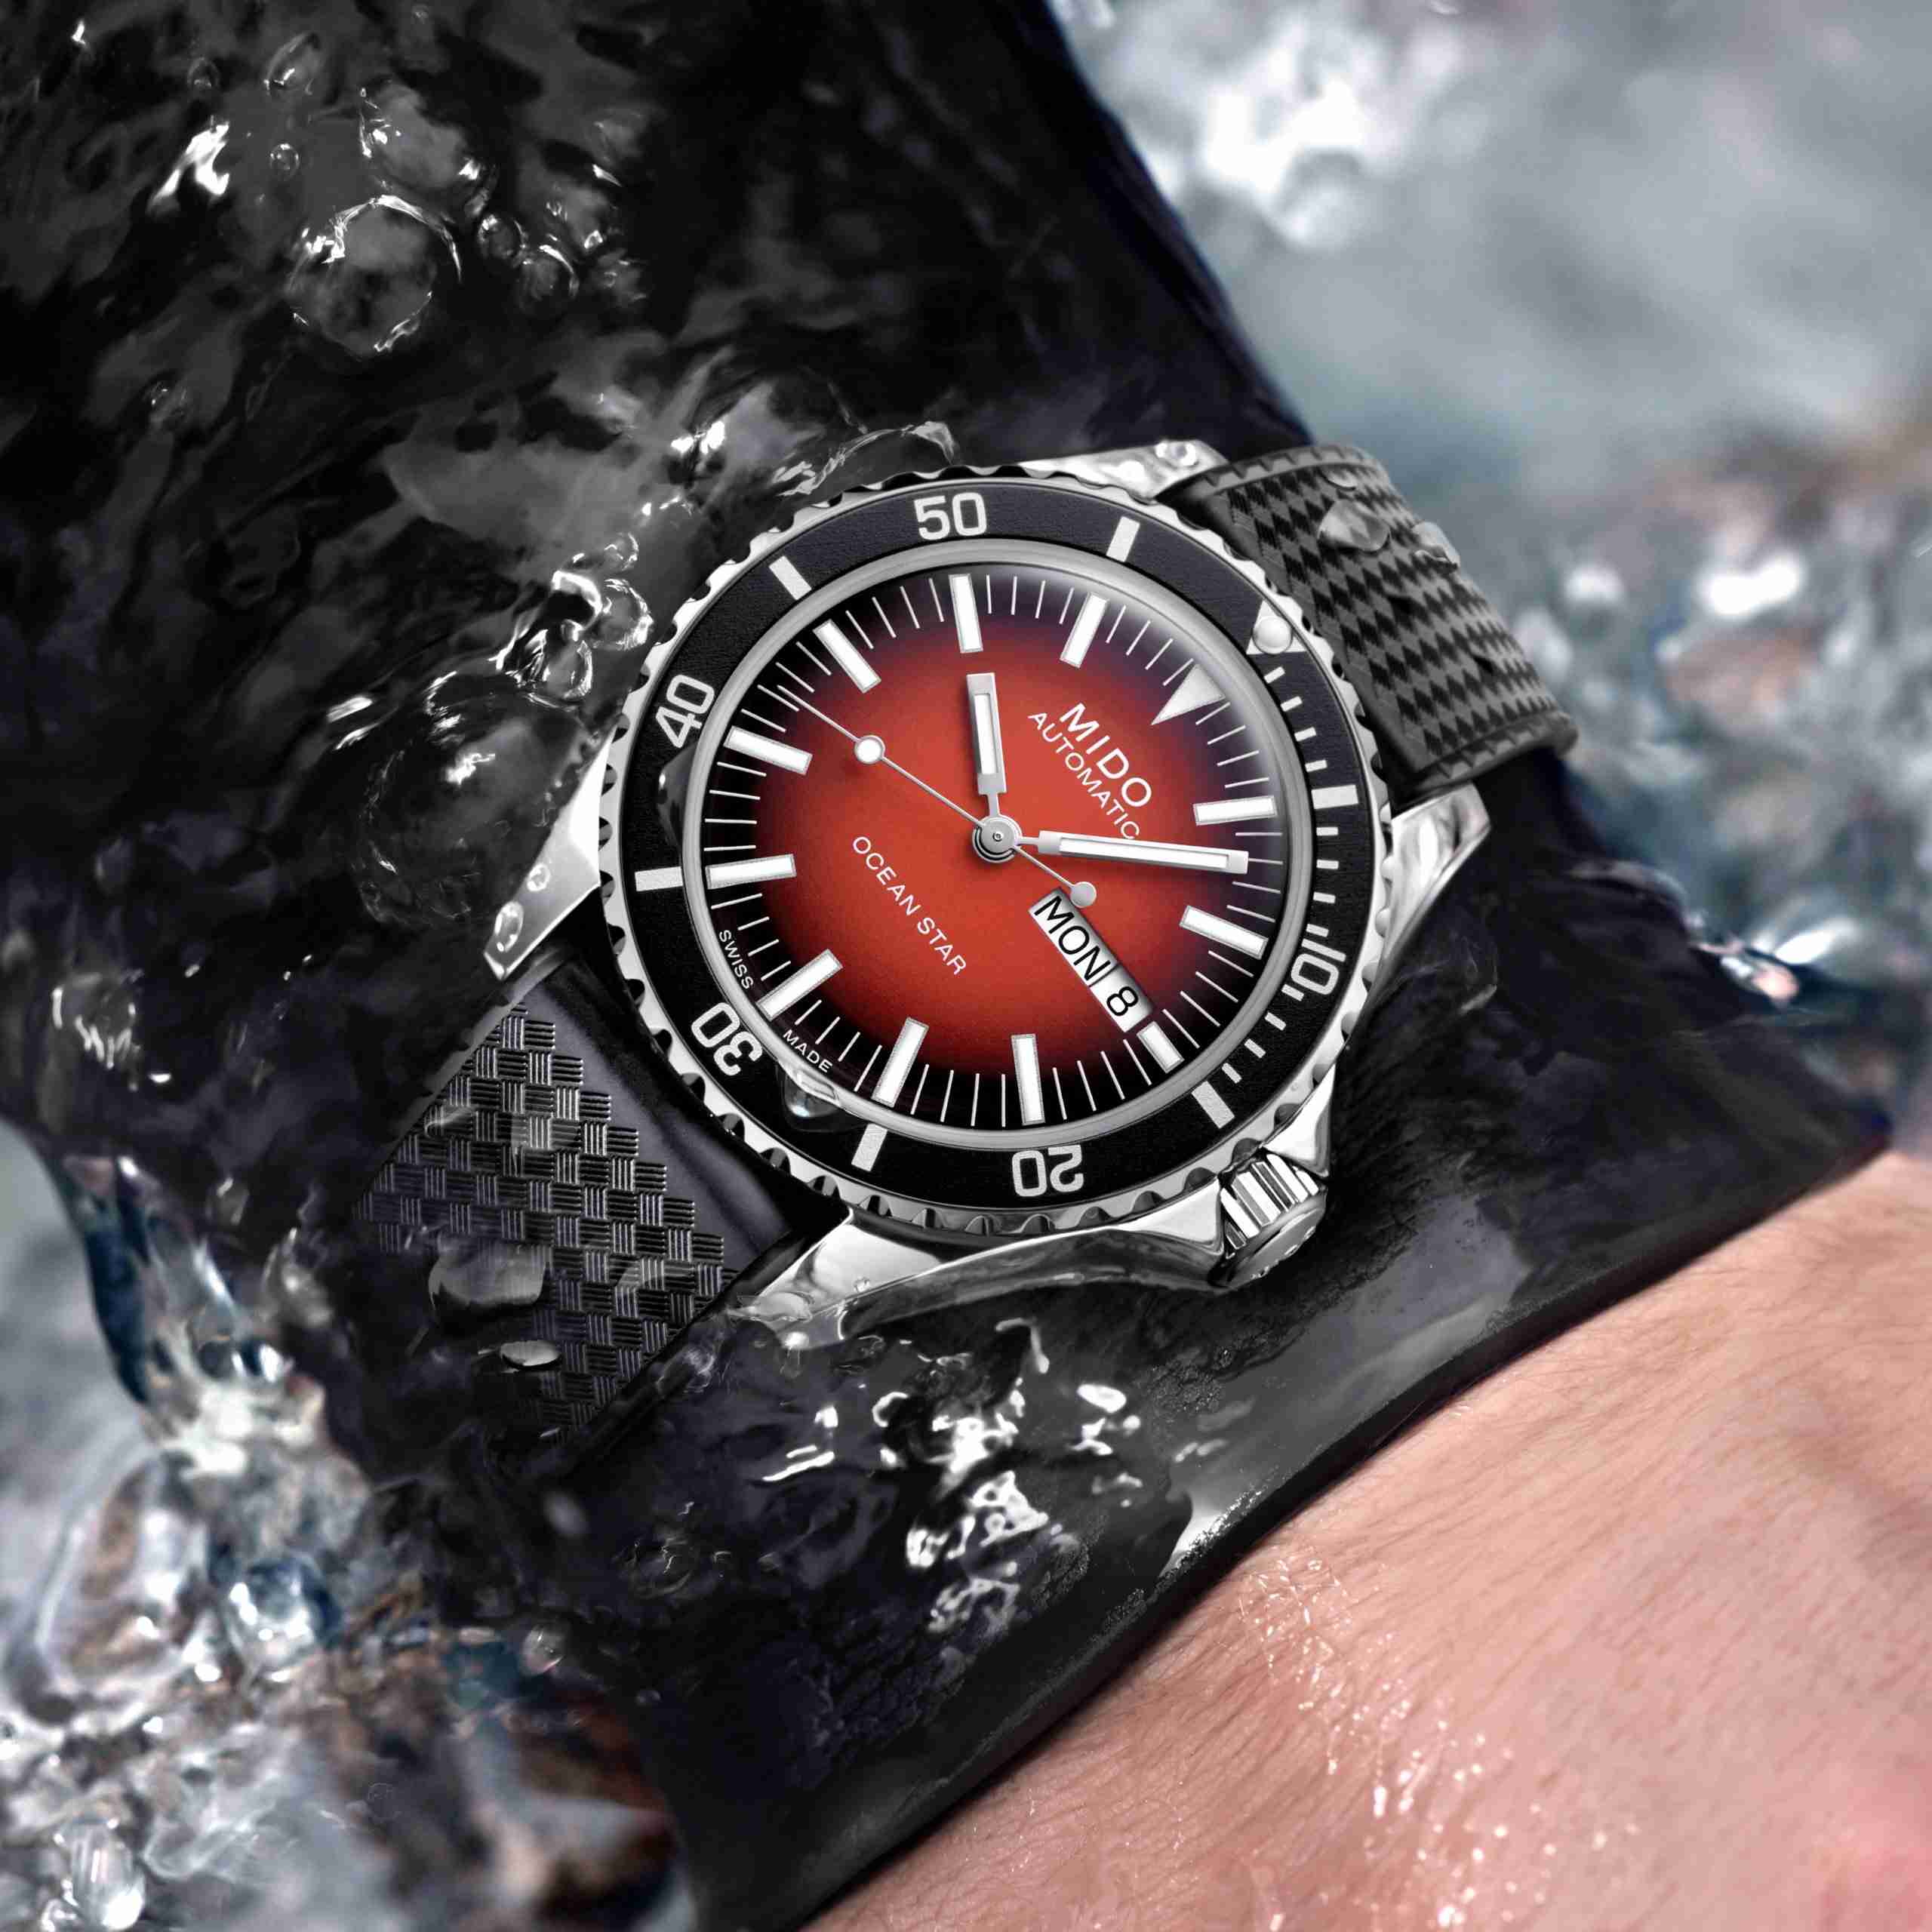 Mido представляет часы Ocean Star Tribute Gradient с эффектным красным циферблатом